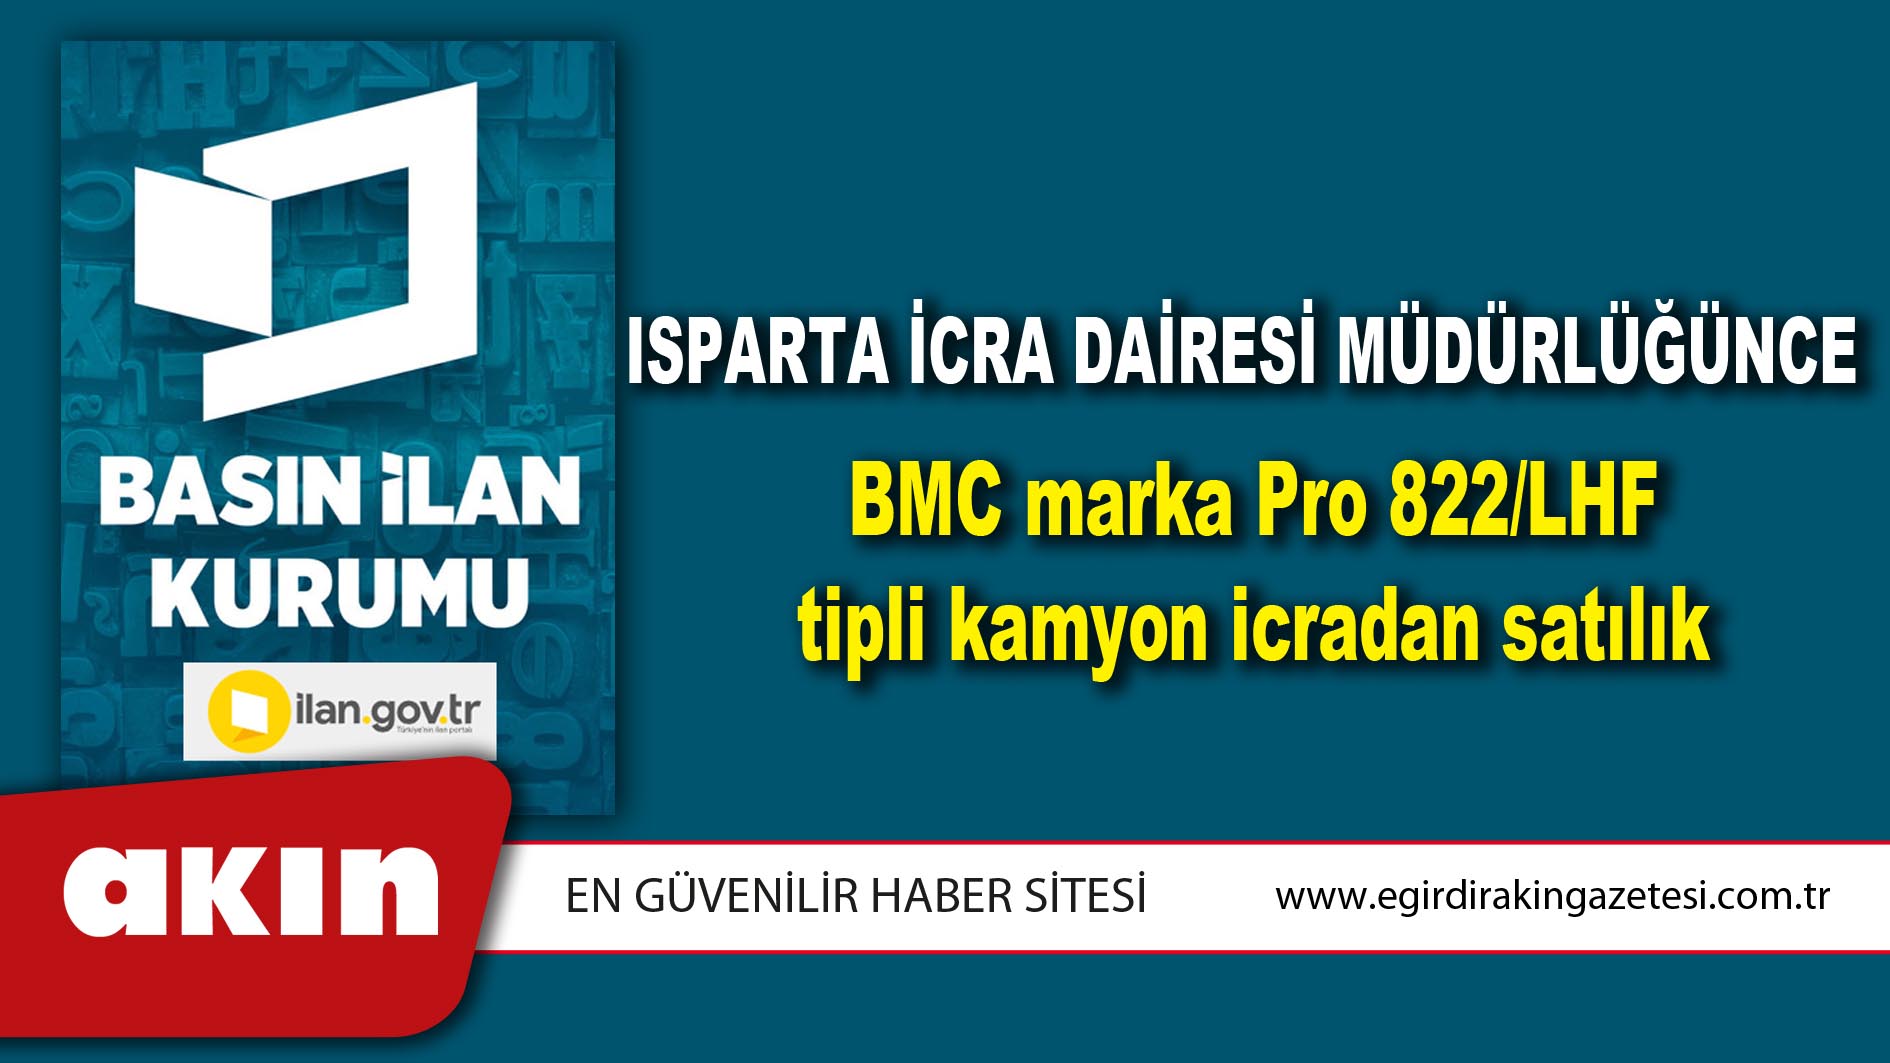 Isparta İcra Dairesi Müdürlüğünce BMC marka Pro 822/LHF tipli kamyon icradan satılık